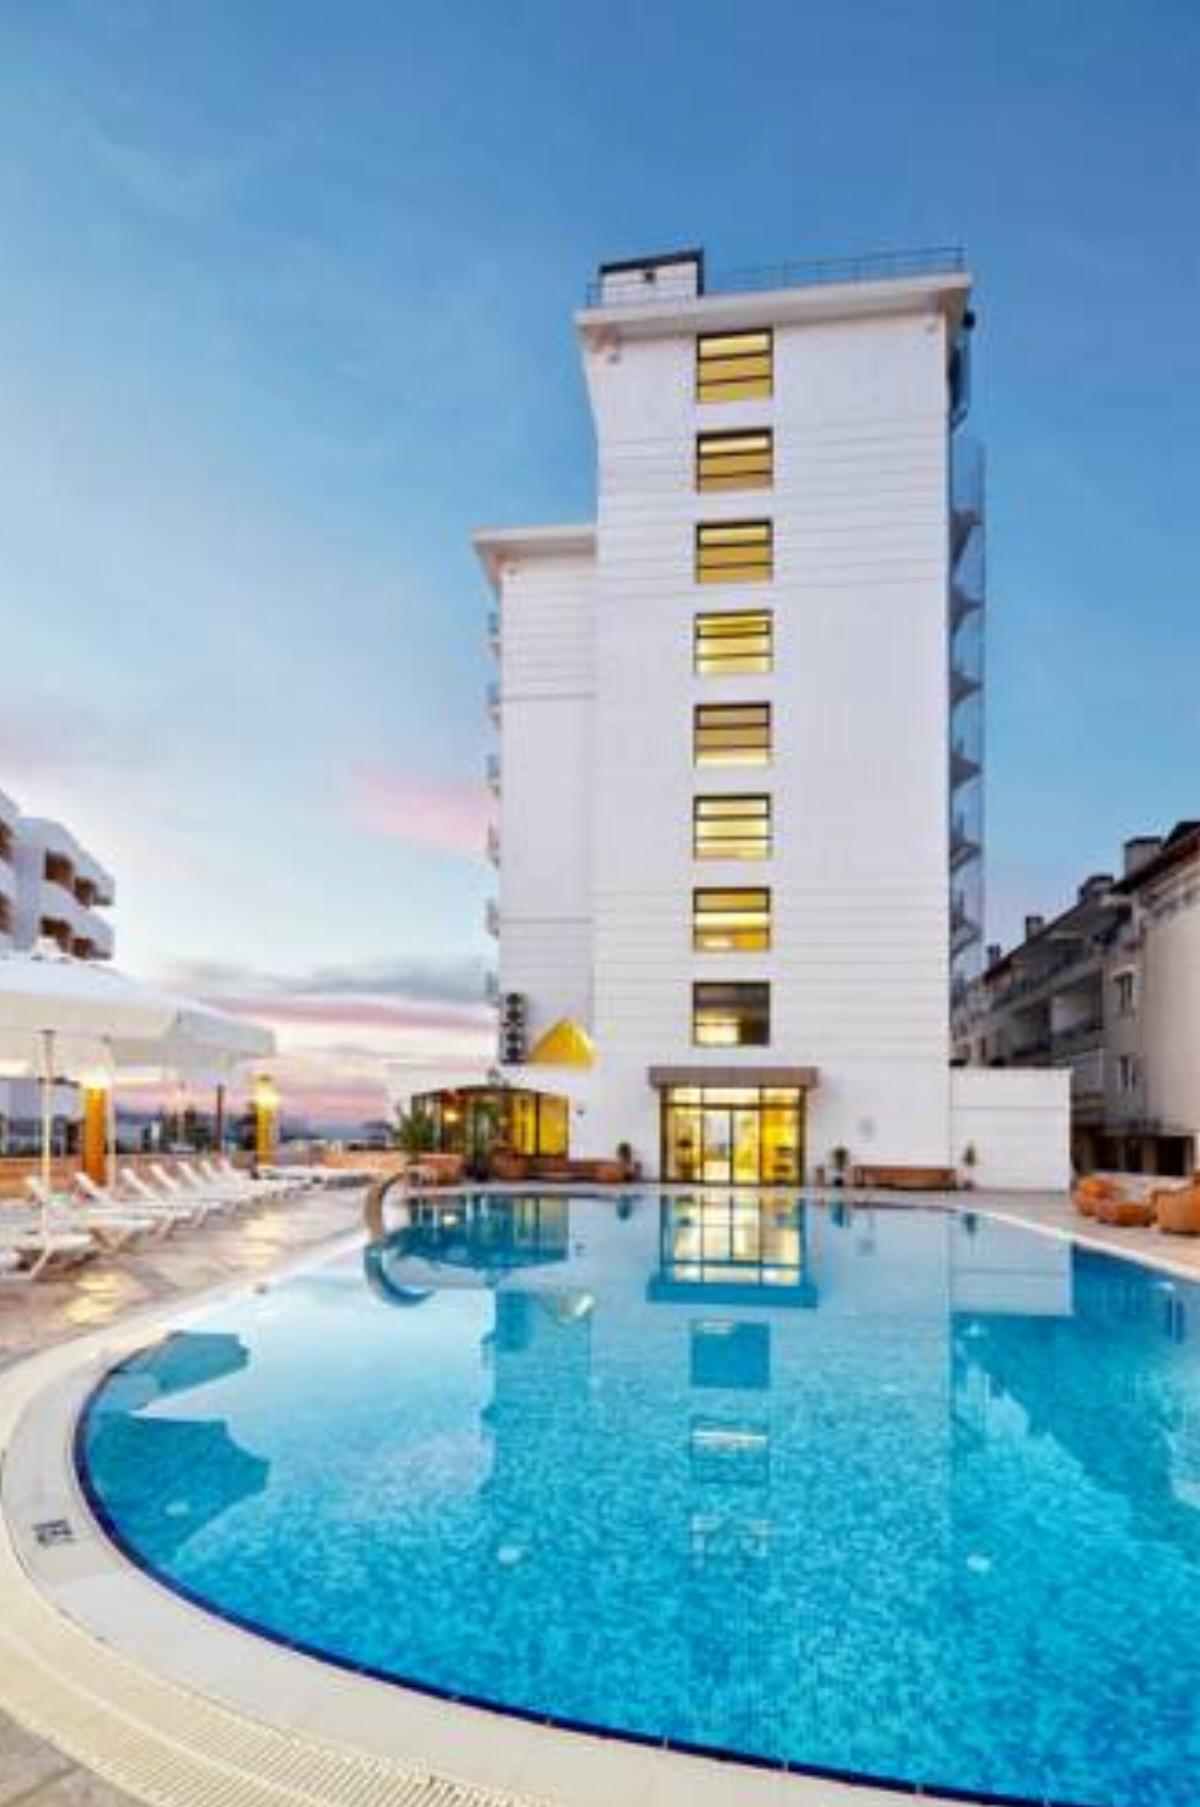 Ayvalik Cinar Hotel Hotel Ayvalık Turkey